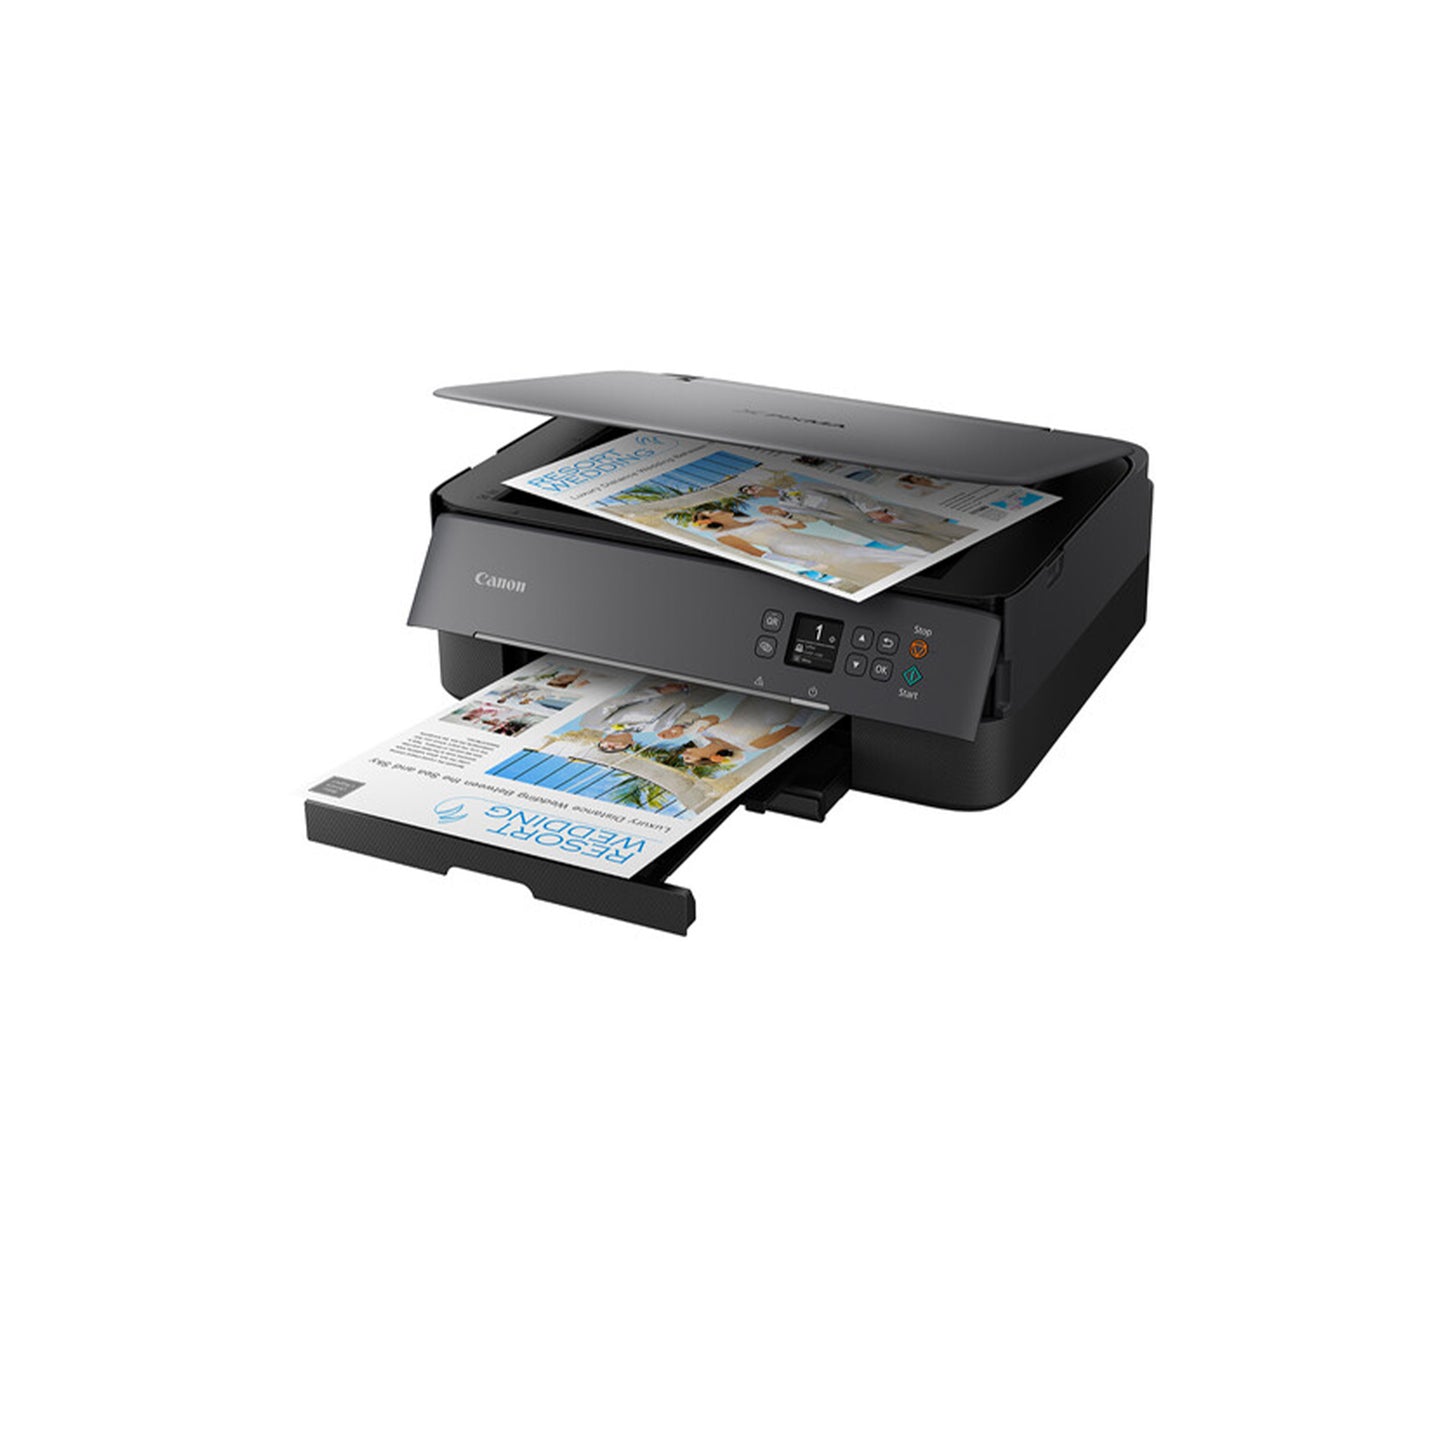 PIXMA TS6420a Wireless All-in-One Printer Black